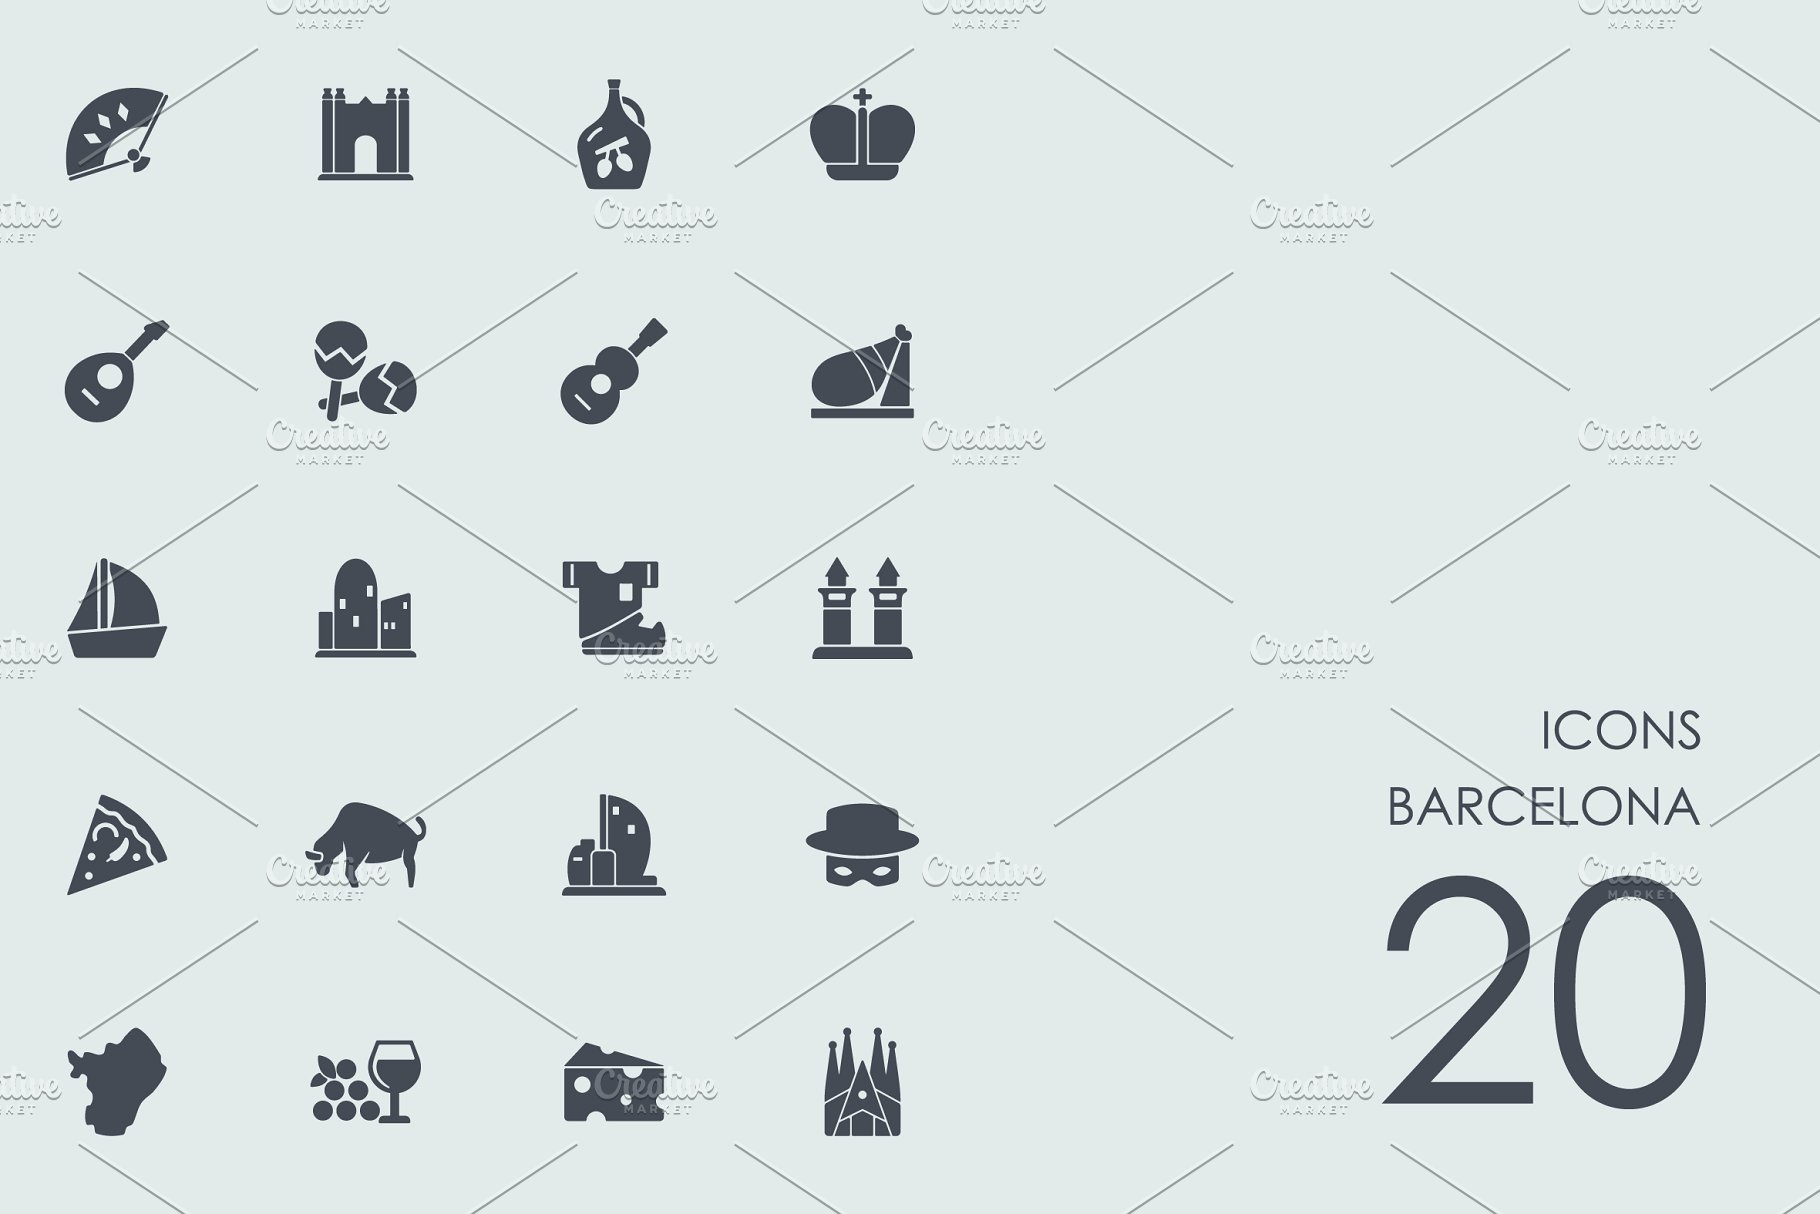 巴塞罗那的图标 Barcelona icons #91611